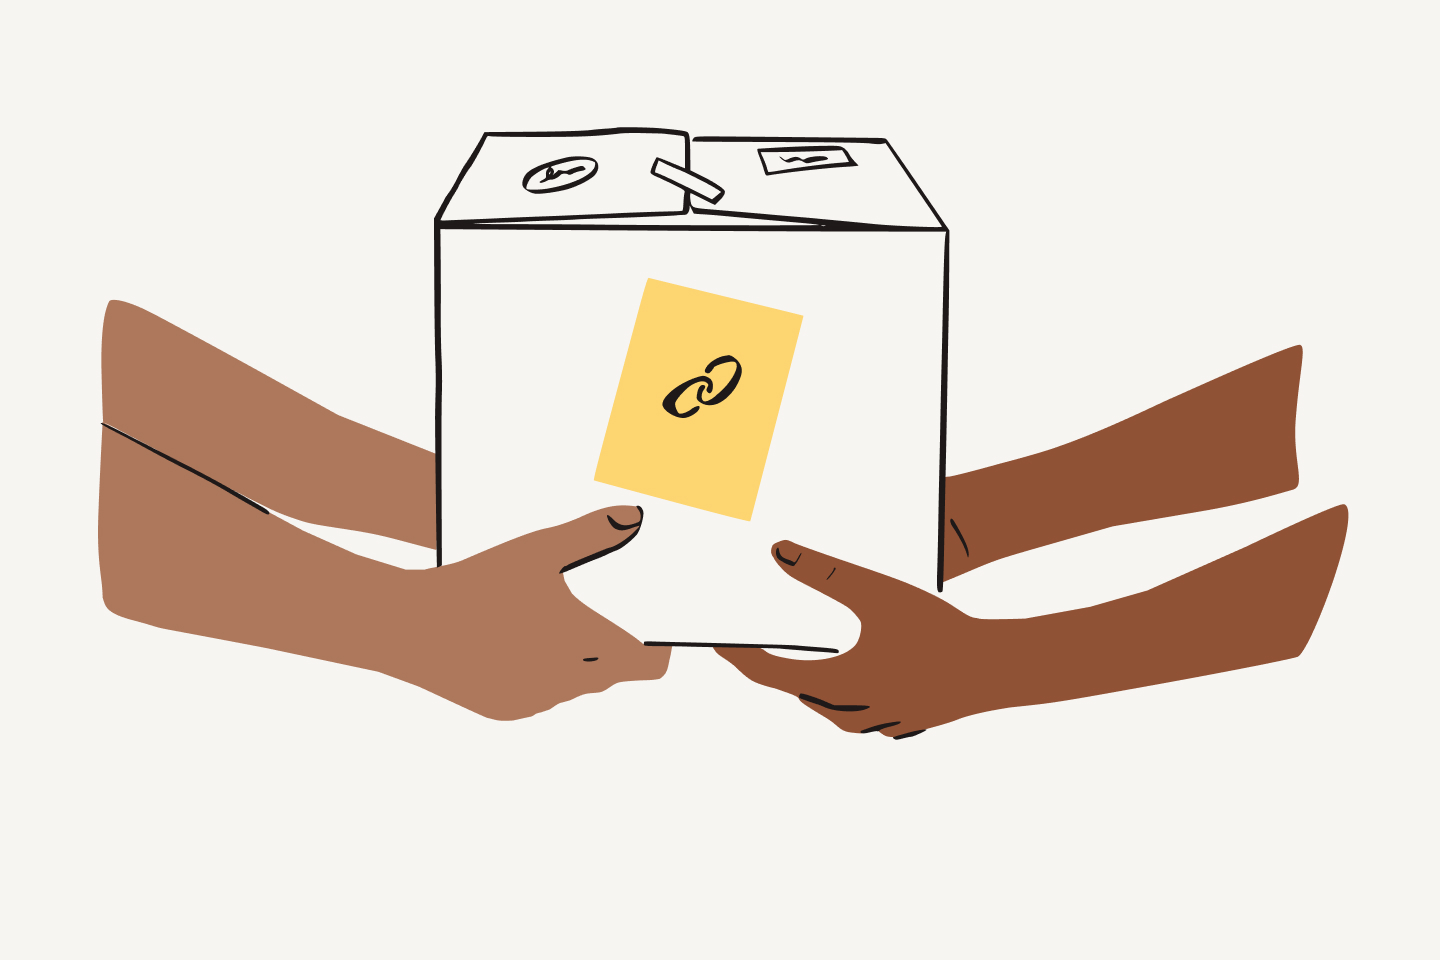 Zwei Personen tragen eine Kiste mit einem gelben Etikett und dem Link-Symbol darauf.